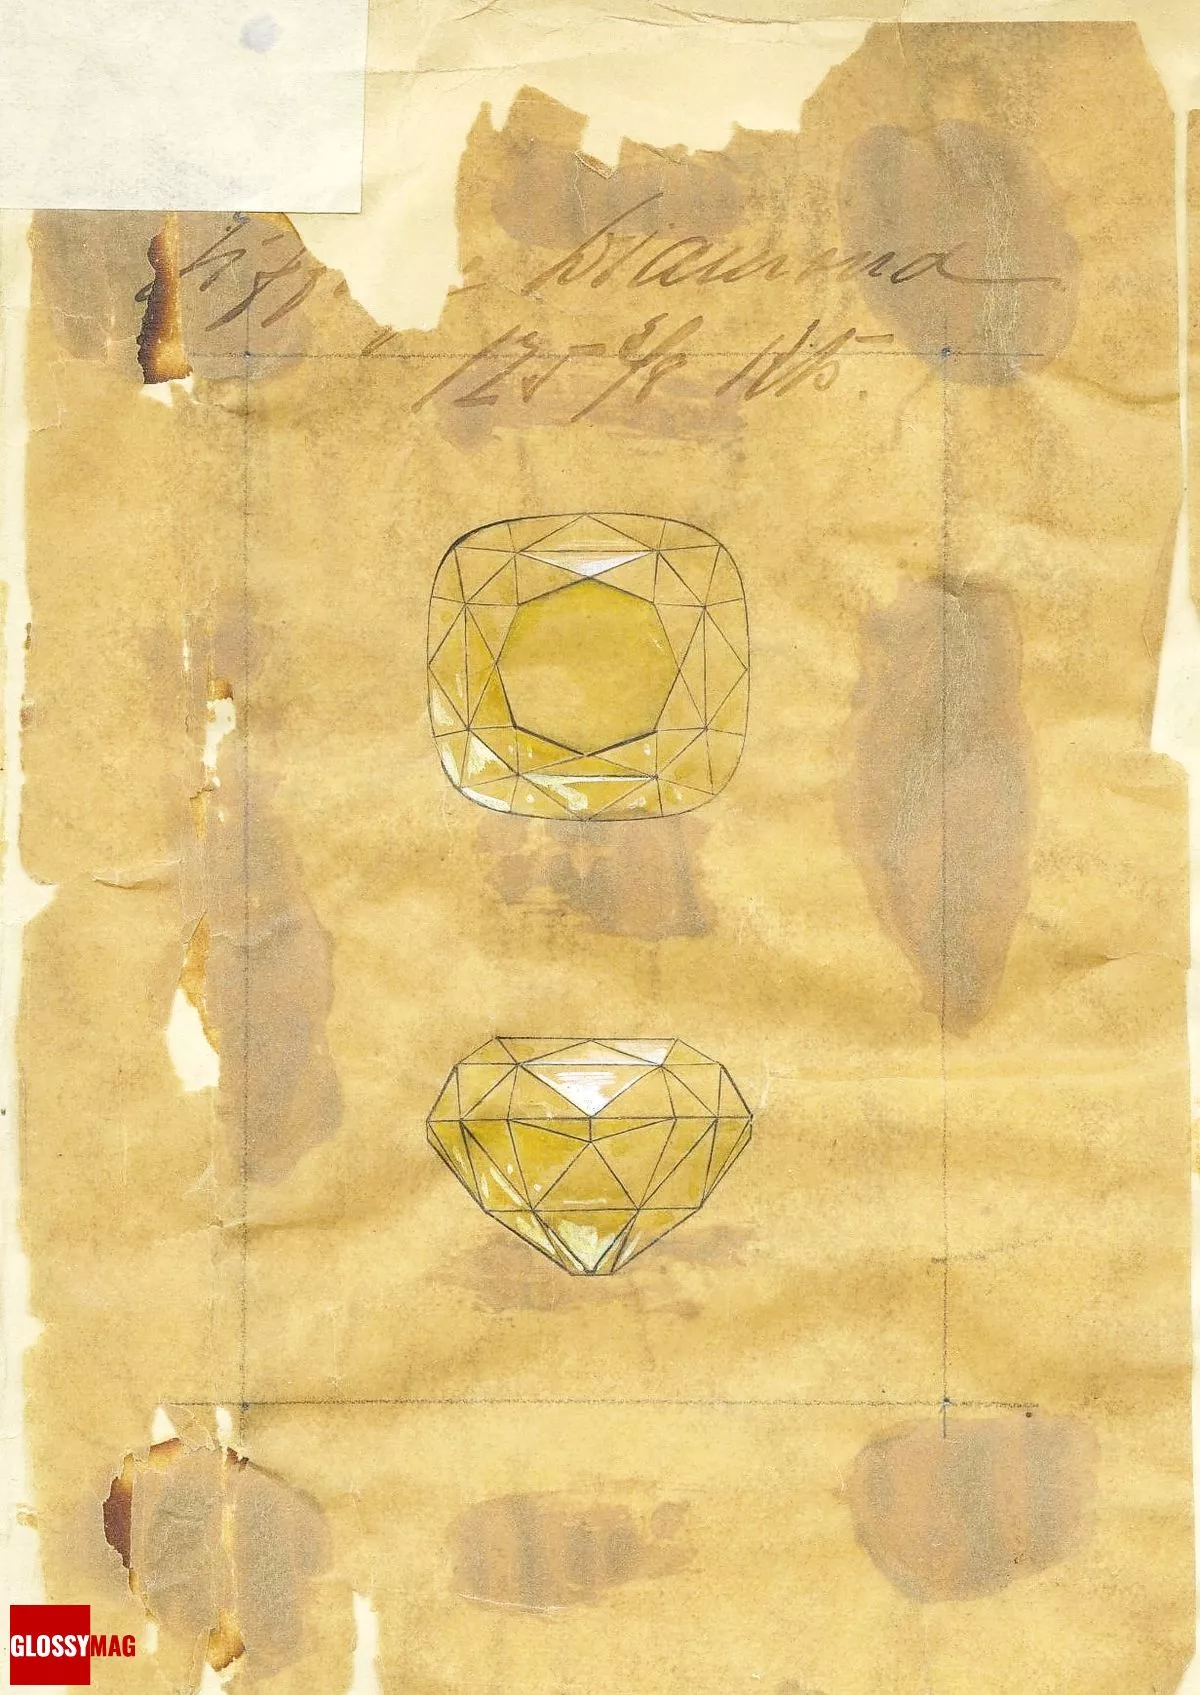 Необработанный желтый алмаз Tiffany весом 287,42 карата был обнаружен на руднике Кимберли в Южной Африке в 1877 году